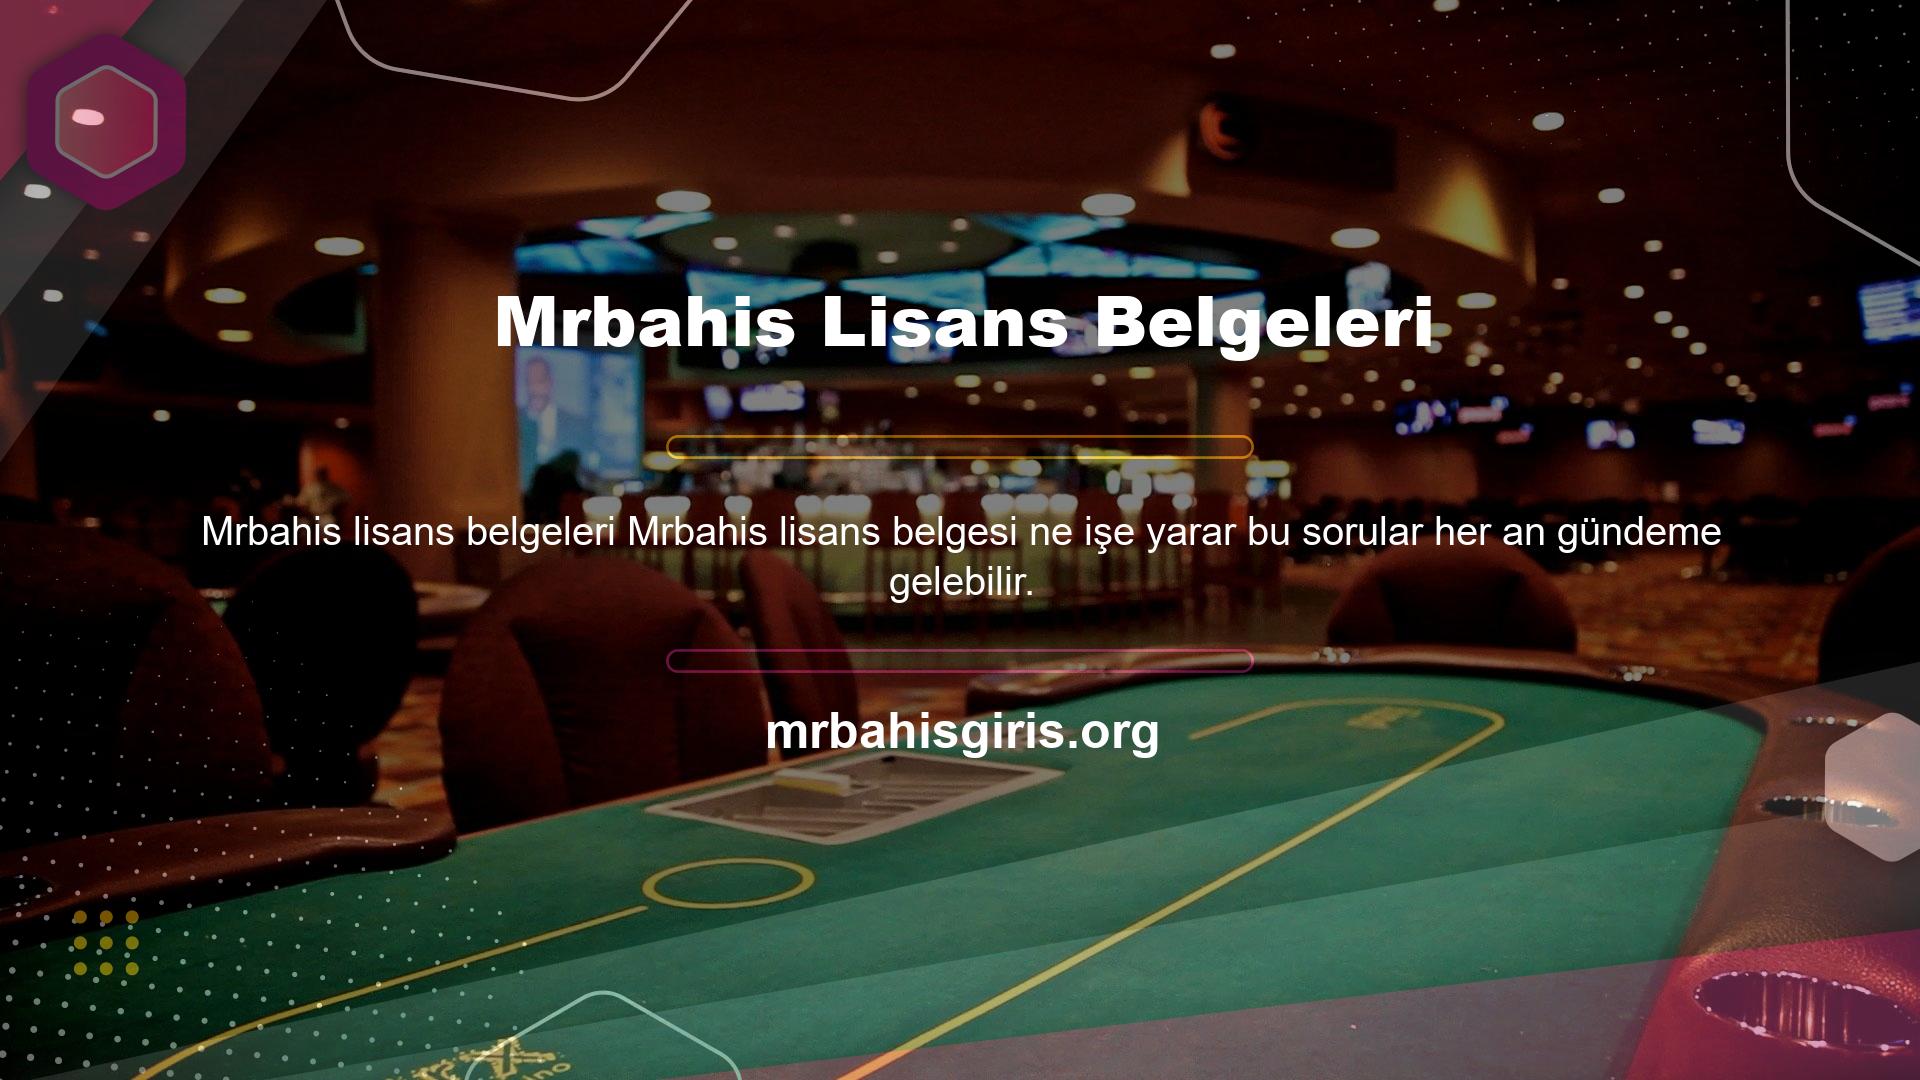 Bu lisans, Mrbahis web sitesinde çeşitli nakit para ve casino oyunları oynamasına izin verir ve müşterilerine ve lisans sahiplerine karşı sorumlu davranmayı taahhüt eder